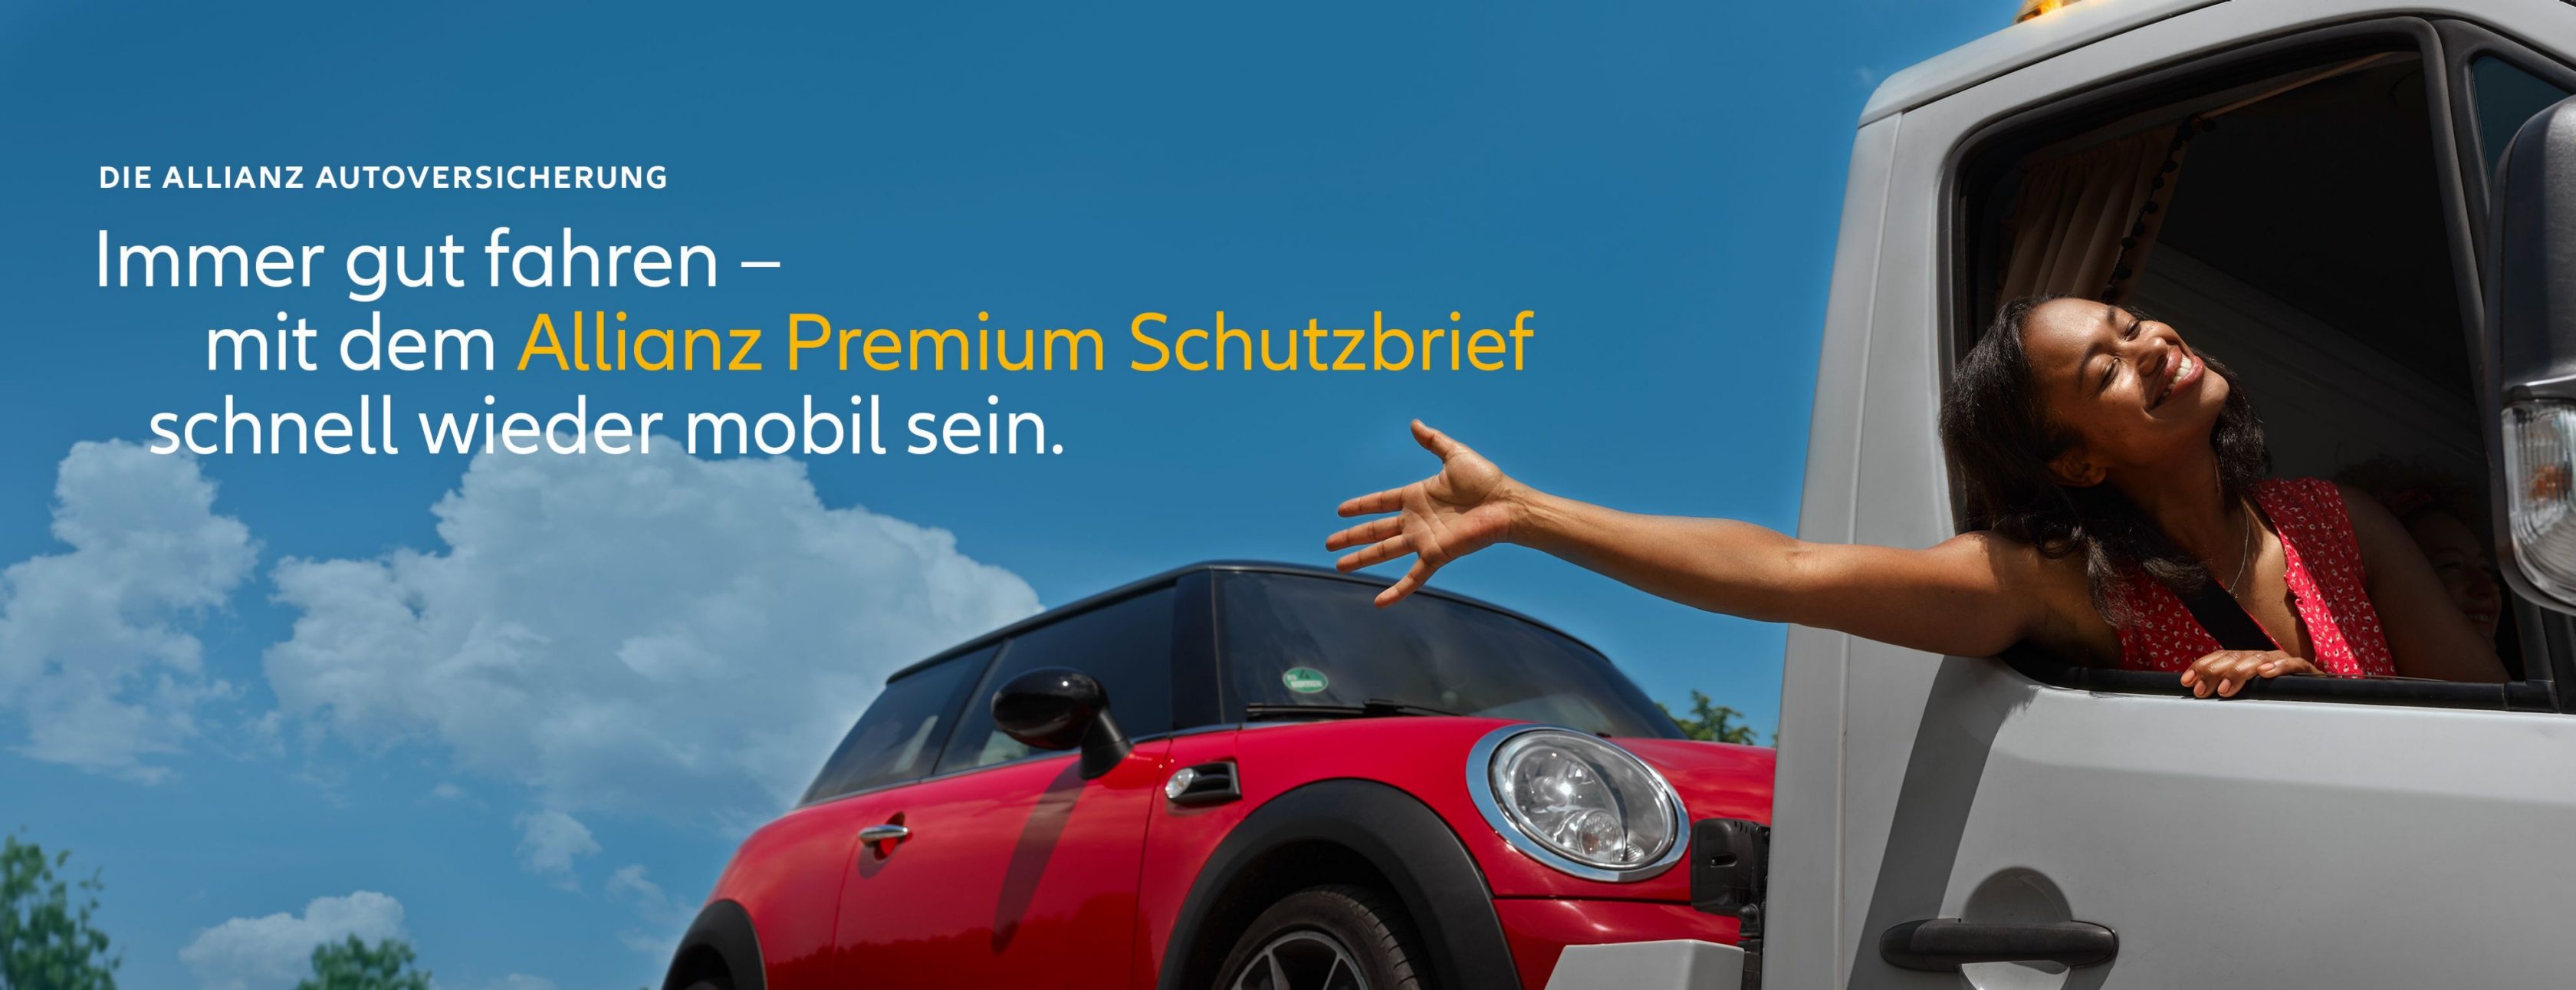 Allianz Versicherung Tim Seifert Stuttgart - Allianz Premium Schutzbrief Auto mini cooper Frau